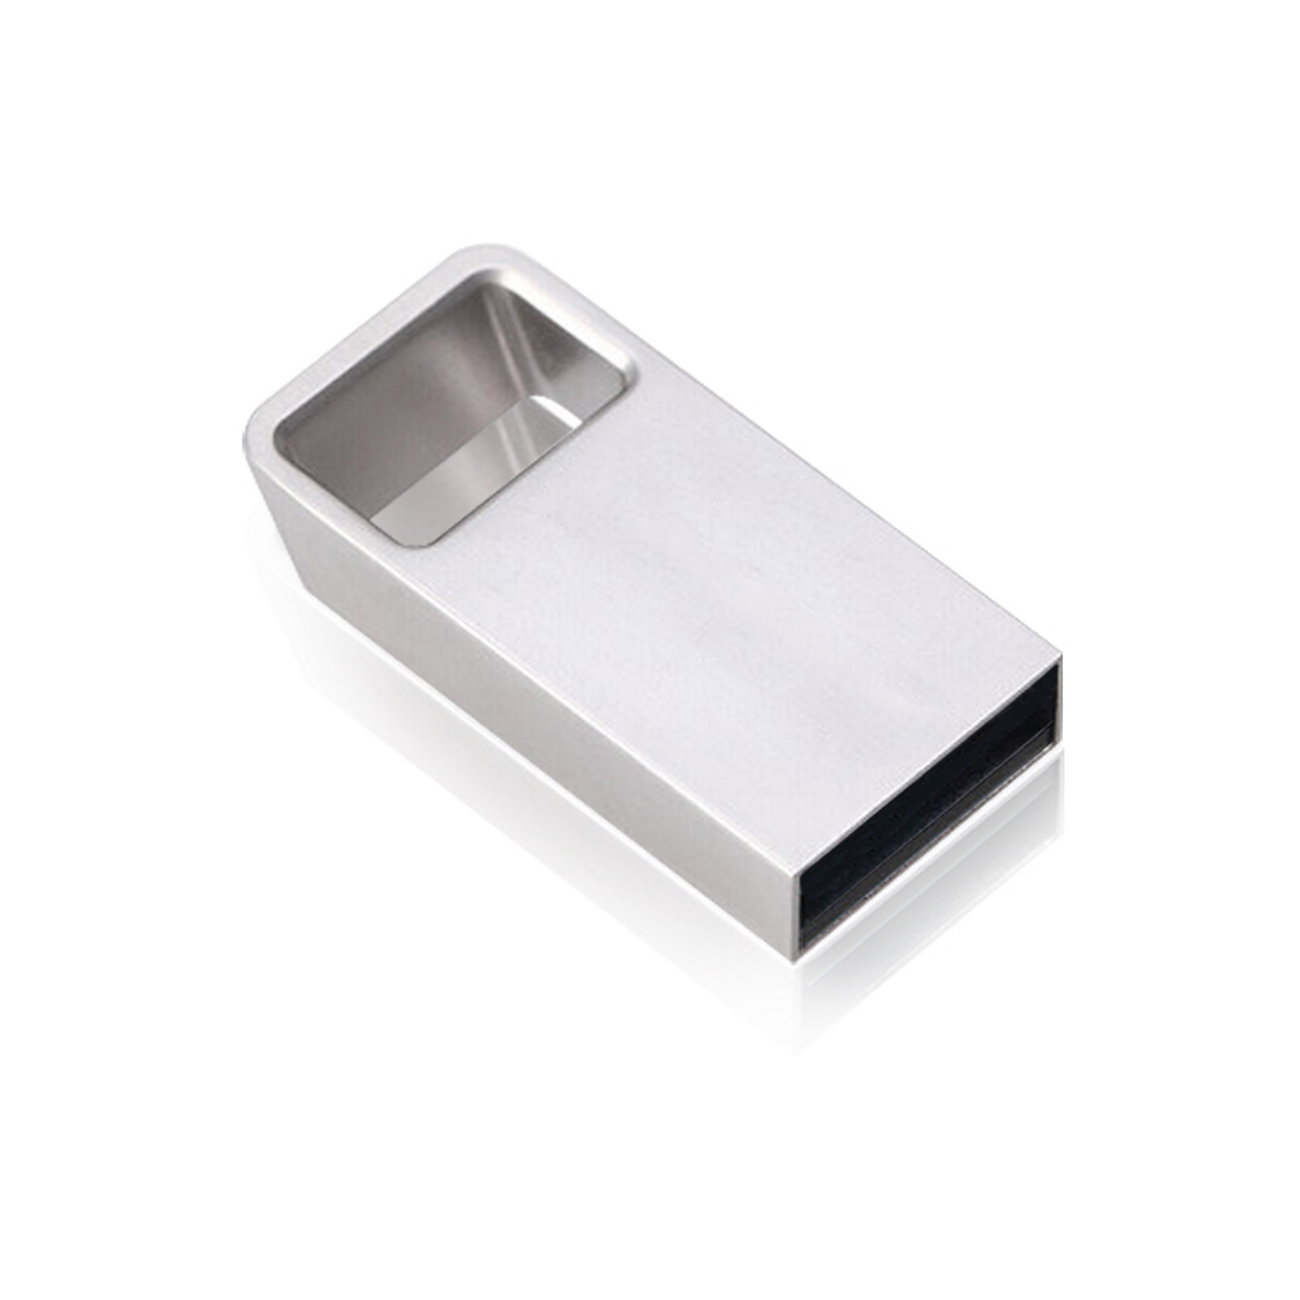 USB GERMANY ® 8 Mini GB) USB-Stick M6 (Silber